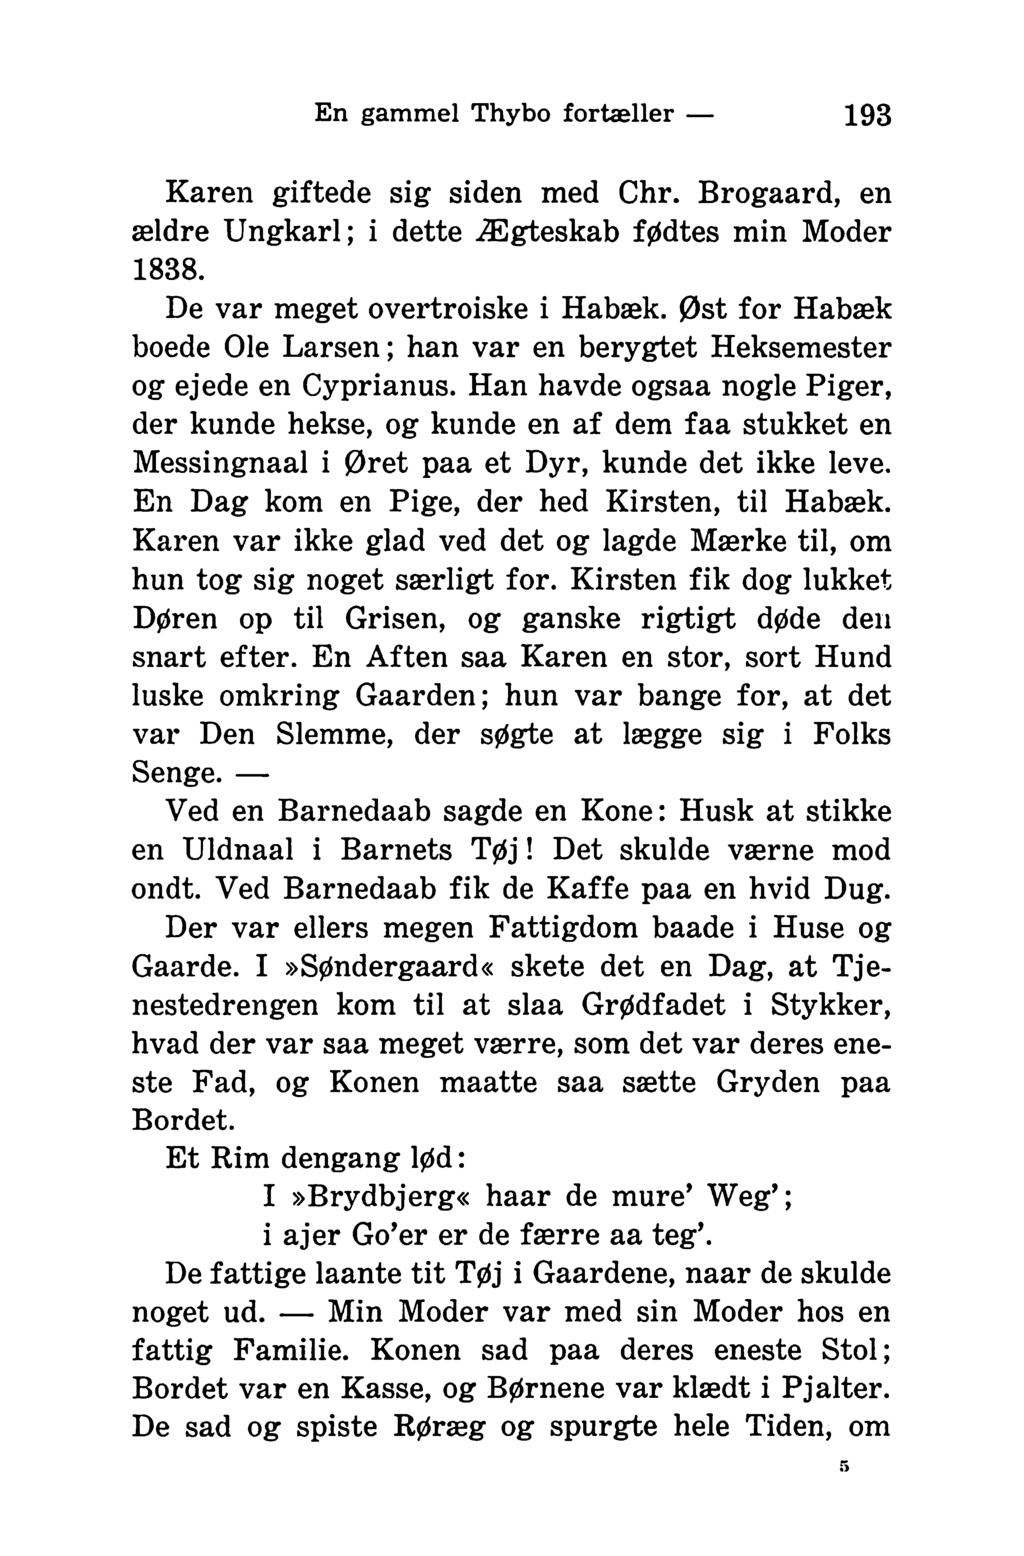 En gammel Thybo fortæller 193 Karen giftede sig siden med Chr. Brogaard, en ældre Ungkarl; i dette Ægteskab fødtes min Moder 1838. De var meget overtroiske i Habæk.